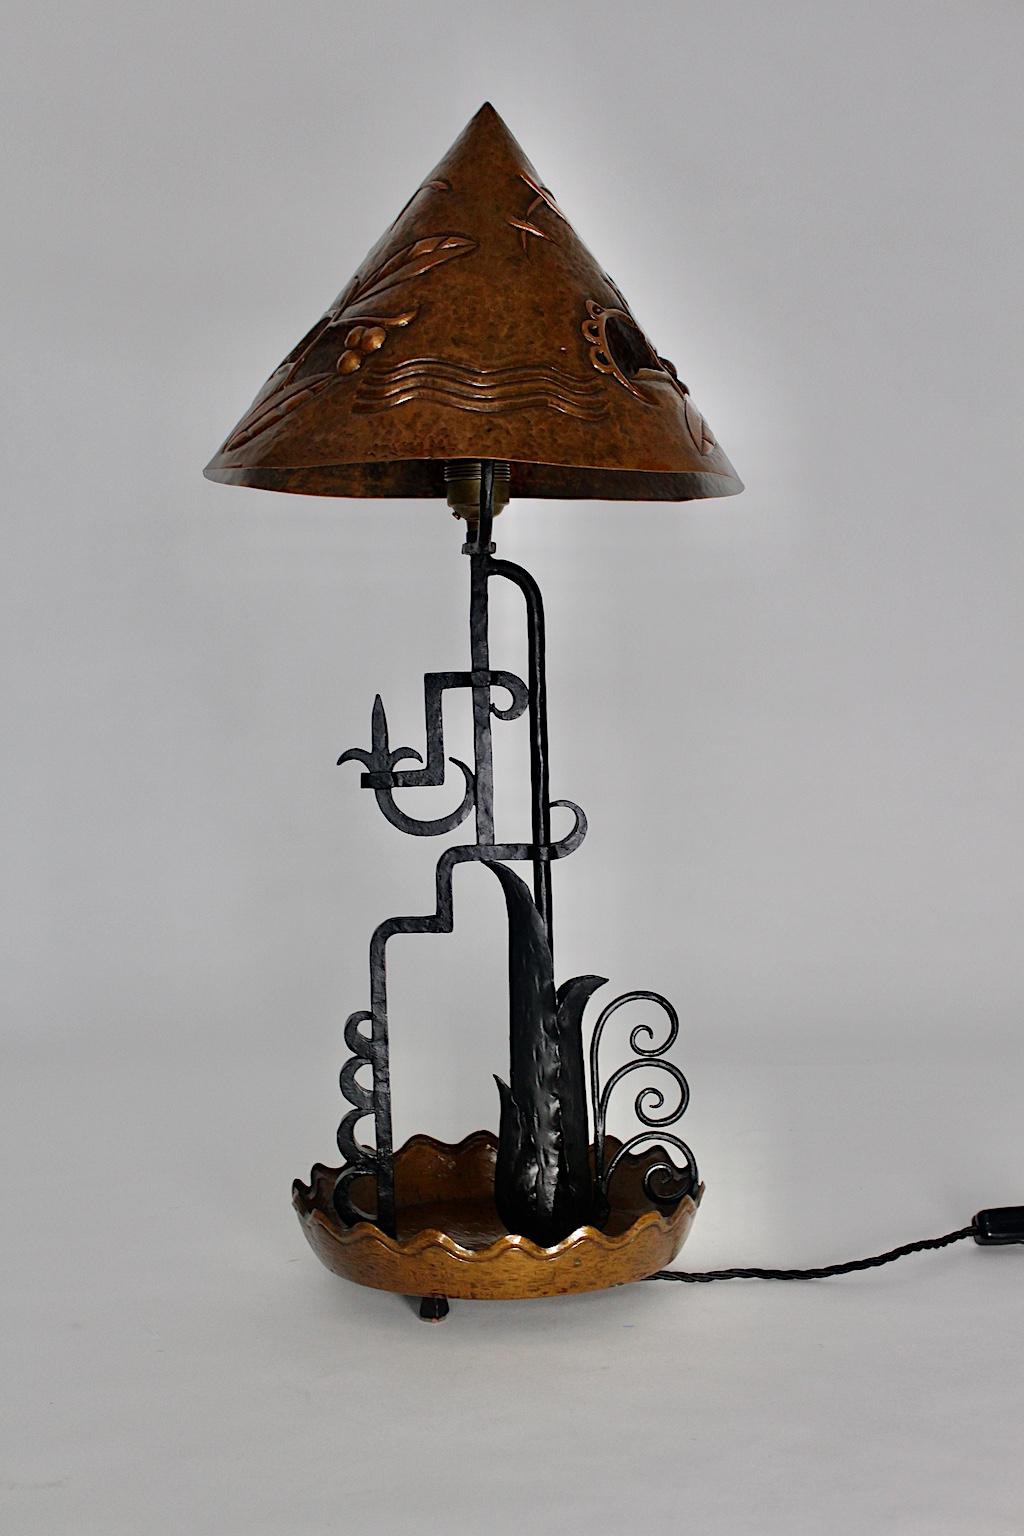  Art Deco Vintage Kupfer Tischlampe, die entworfen wurde und aus, um 1920, Wien.
Die erstaunliche Tischlampe wurde aus Kupfer und schwarz lackiertem Eisen handgefertigt. Der spitze Hut zeigt die typischen Art-Déco-Ornamente, die eingeprägt